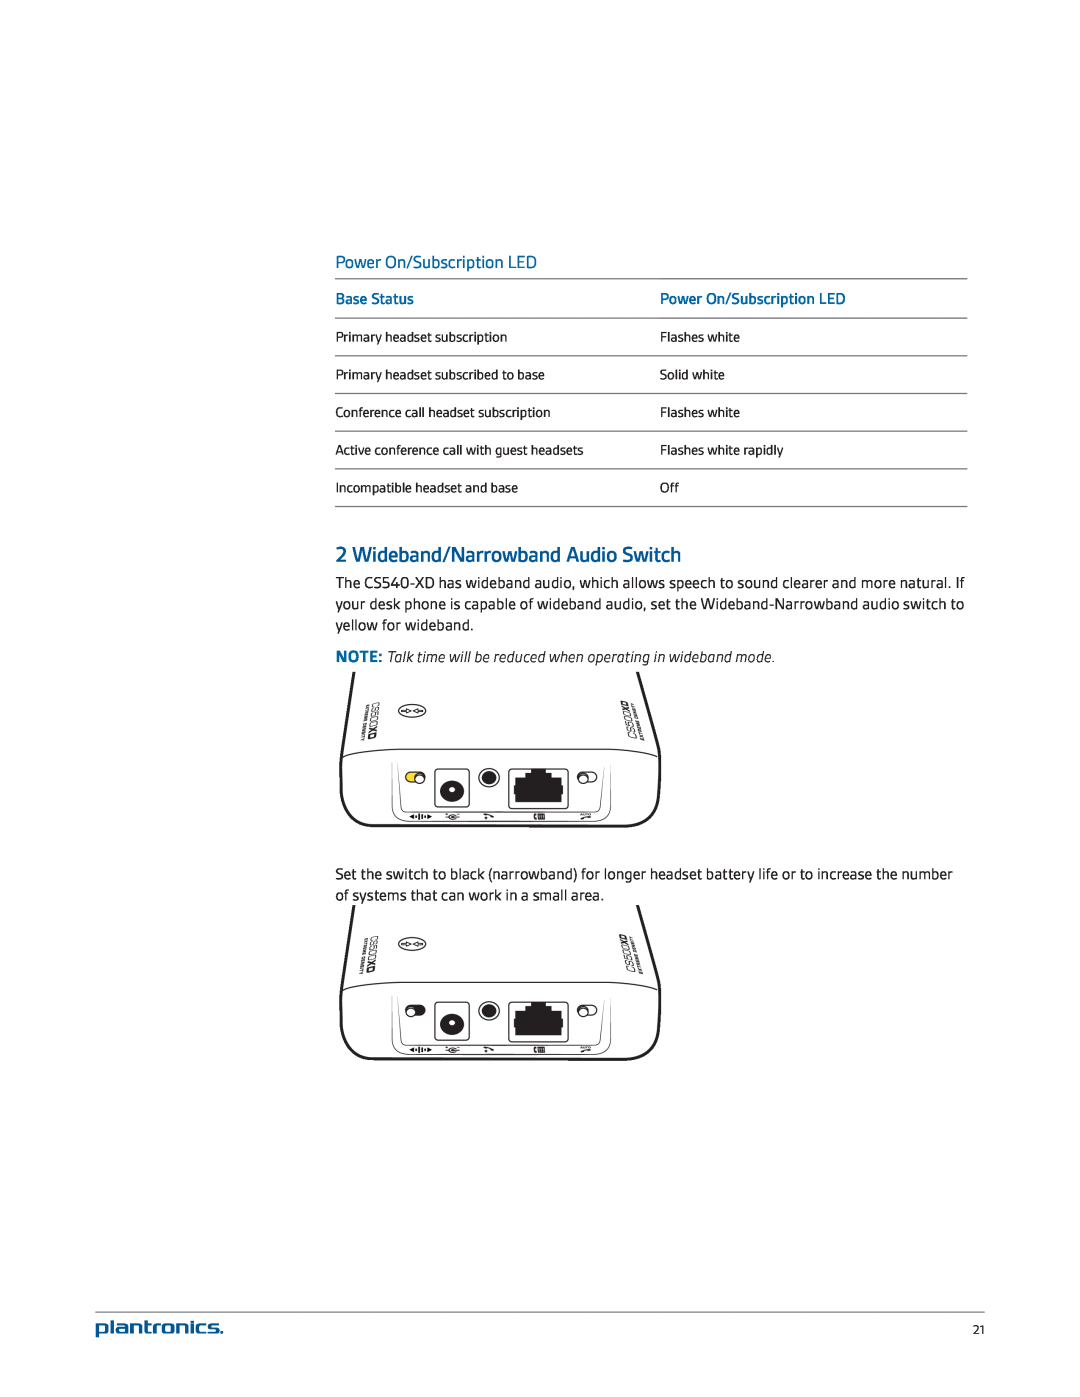 Plantronics CS540-XD manual Wideband/Narrowband Audio Switch, Power On/Subscription LED, Base Status 